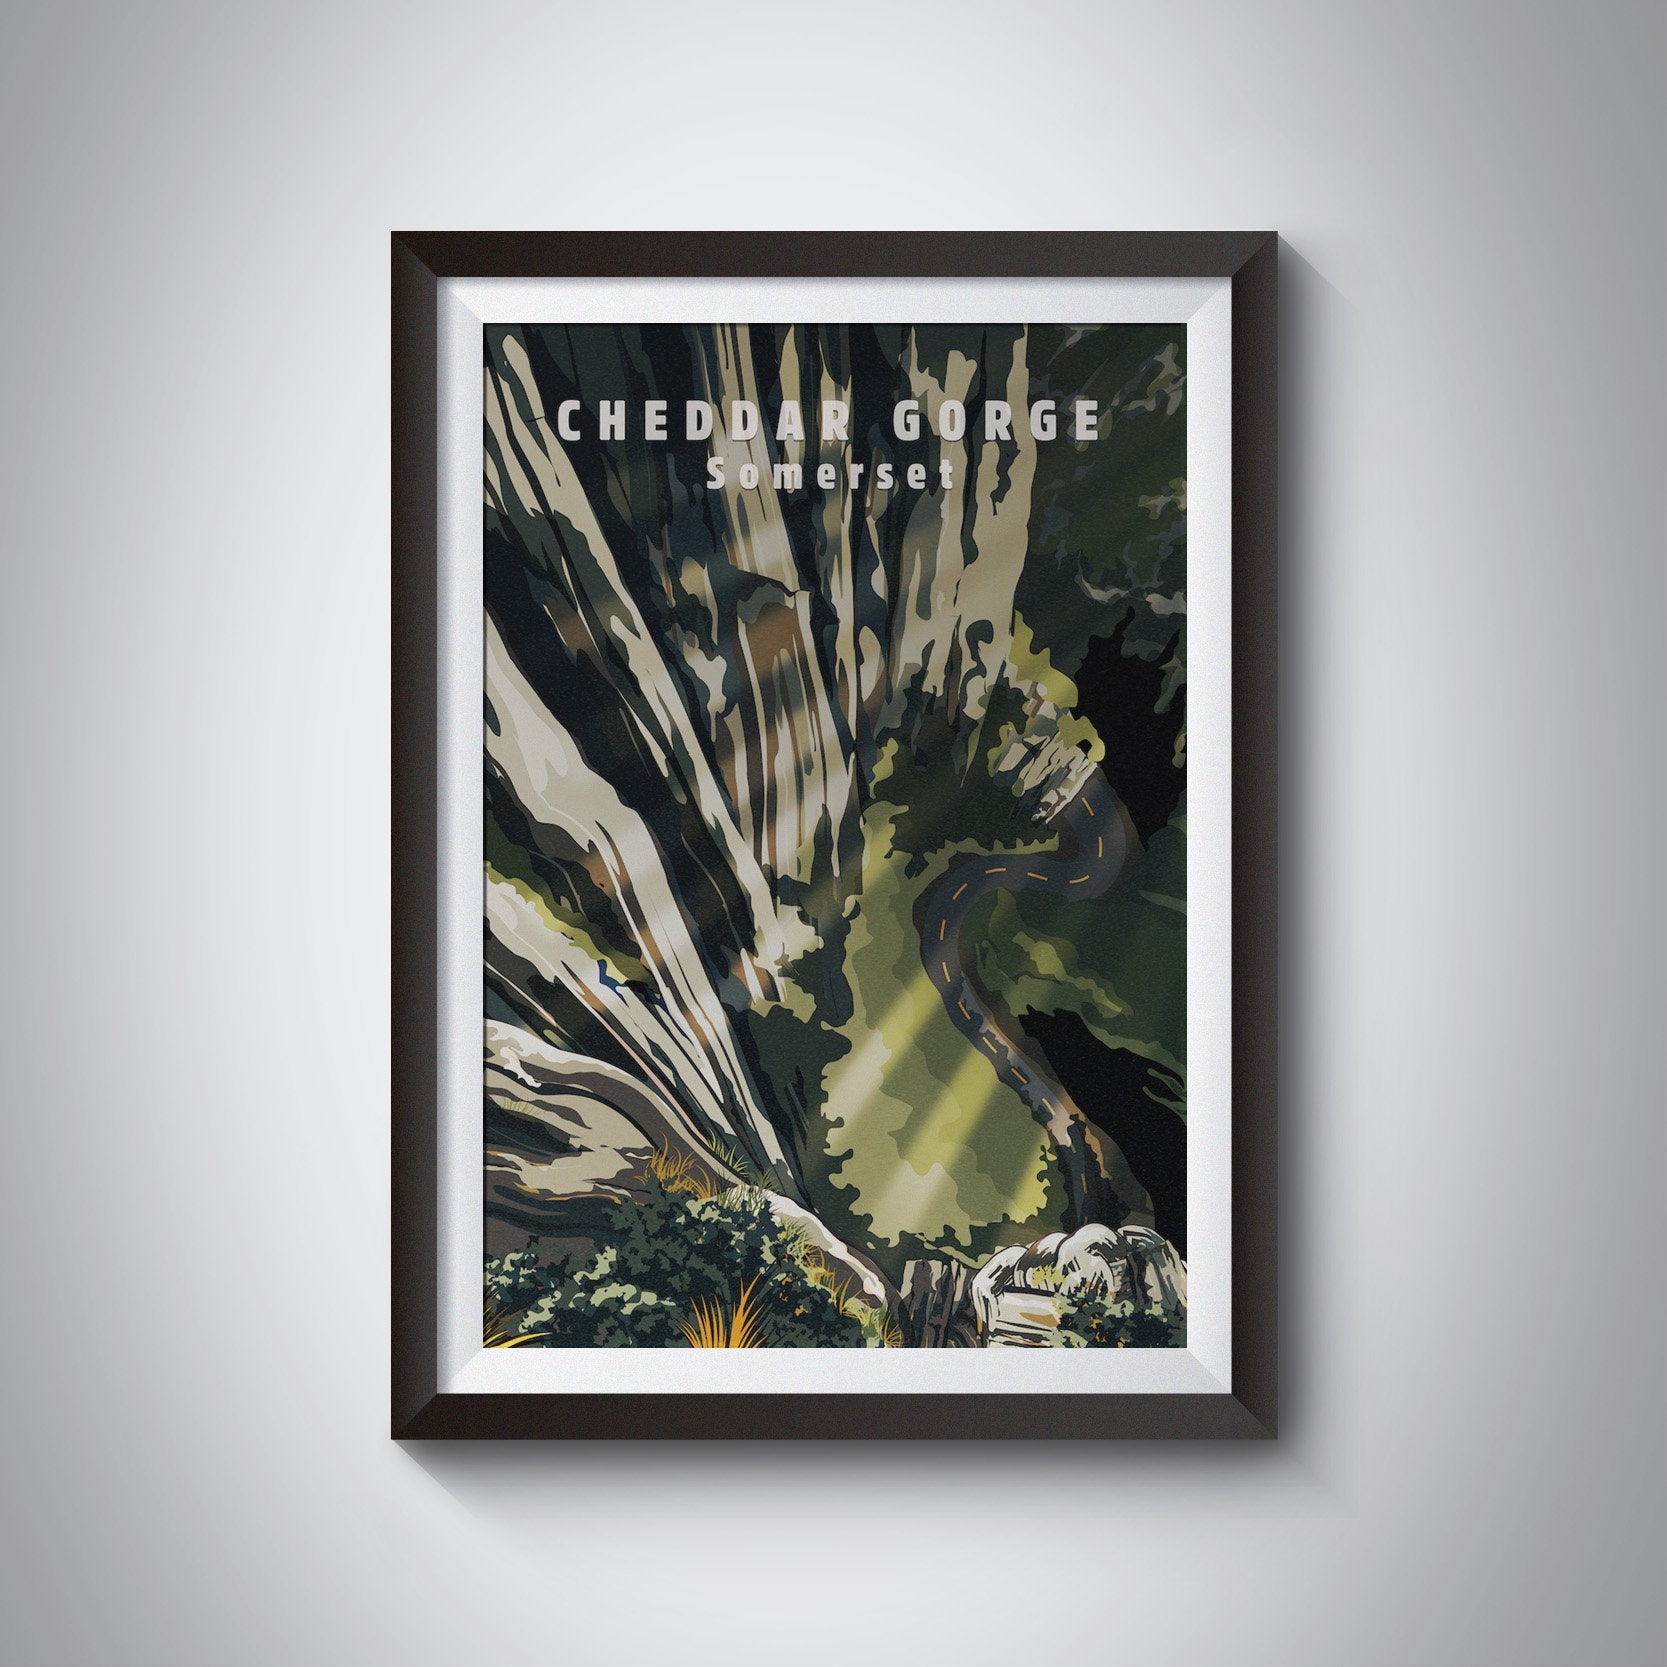 Cheddar Gorge Somerset Travel Poster